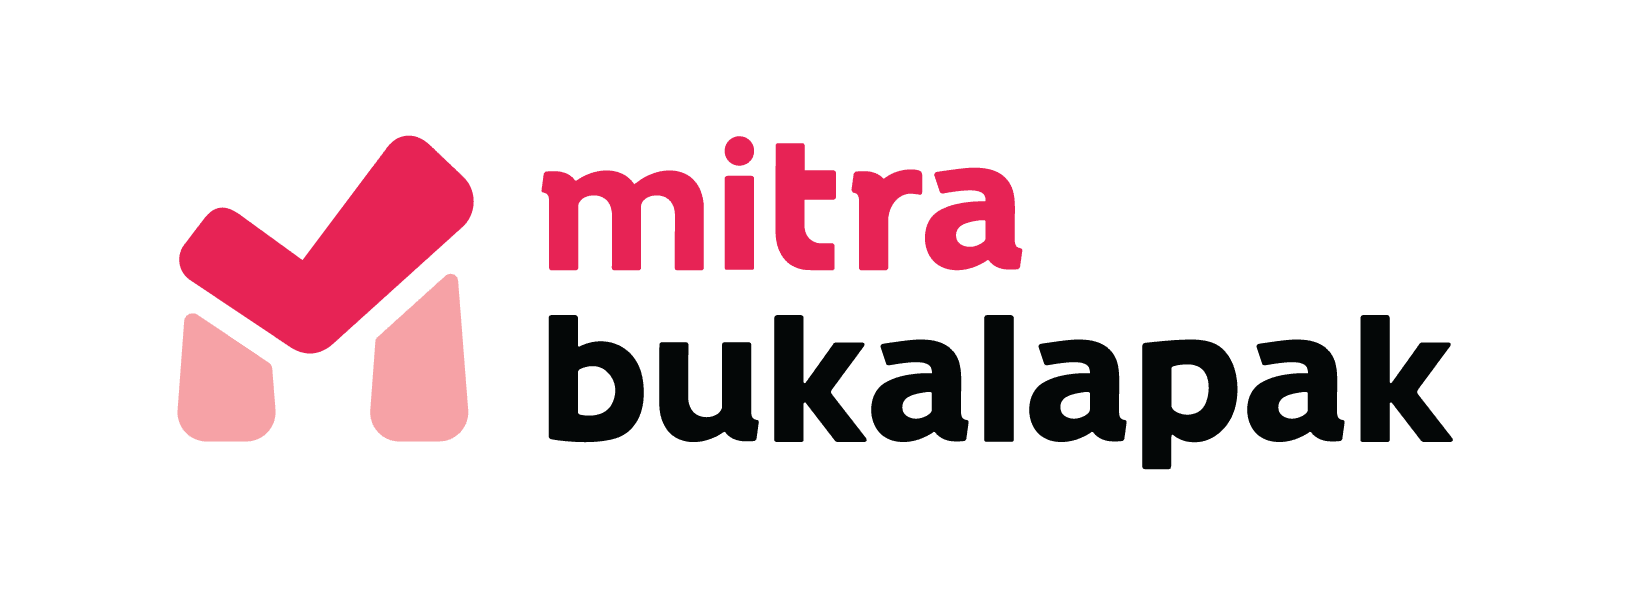 bukalapak Logo - About Us